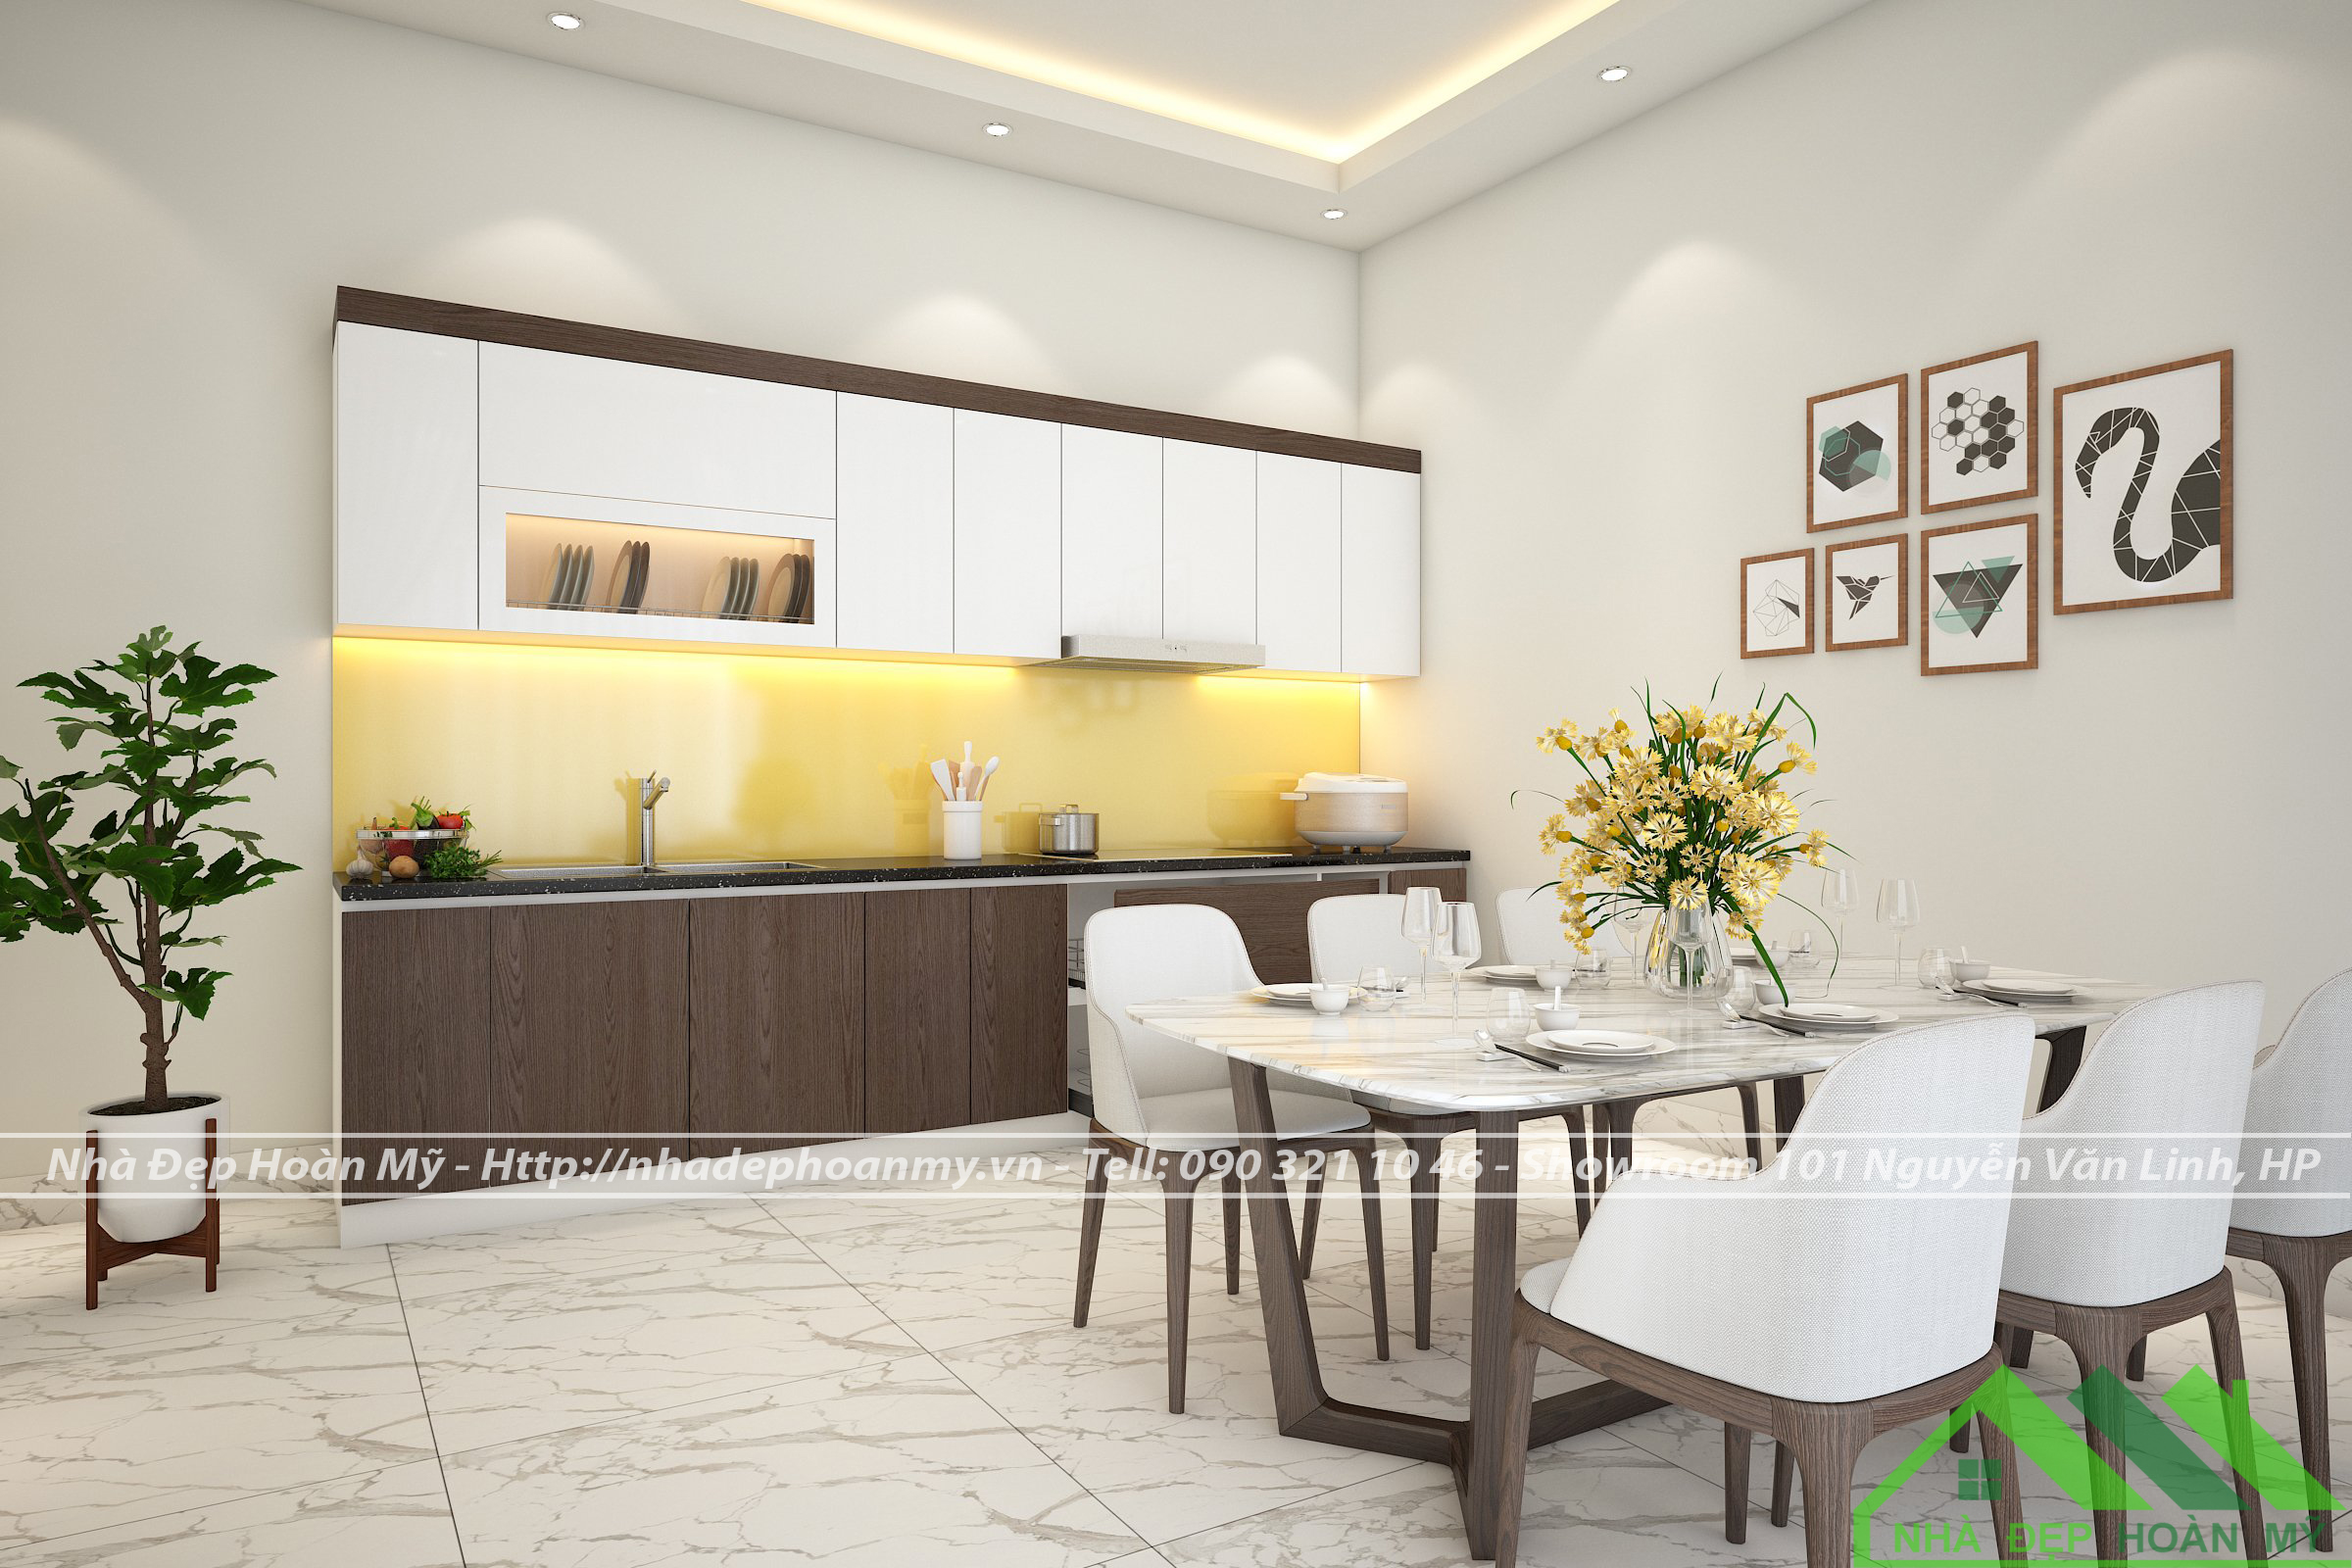 Tuyệt chiêu lựa chọn kiểu dáng tủ bếp phù hợp với diện tích không gian bếp